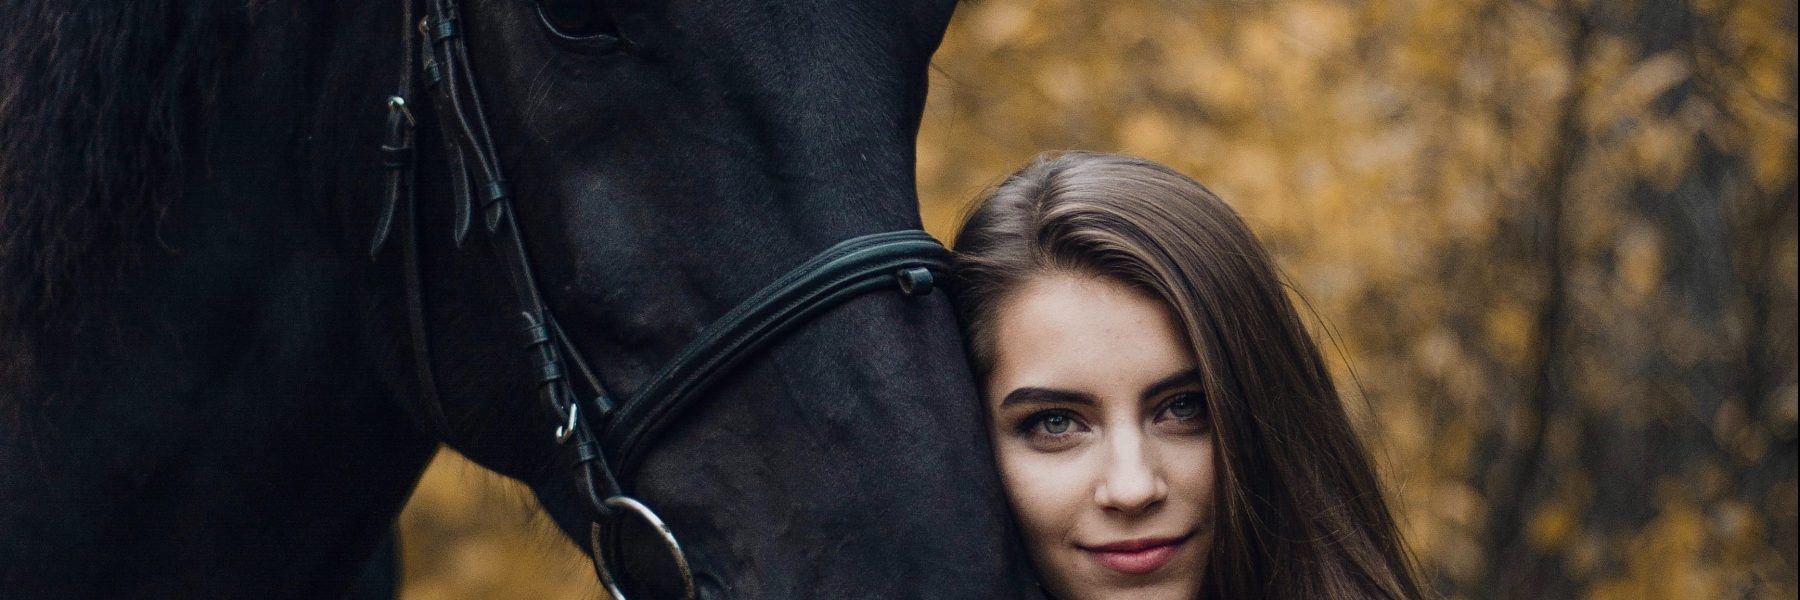 Horse And Love – Avis sur le Site de Rencontre Cheval & Équitation